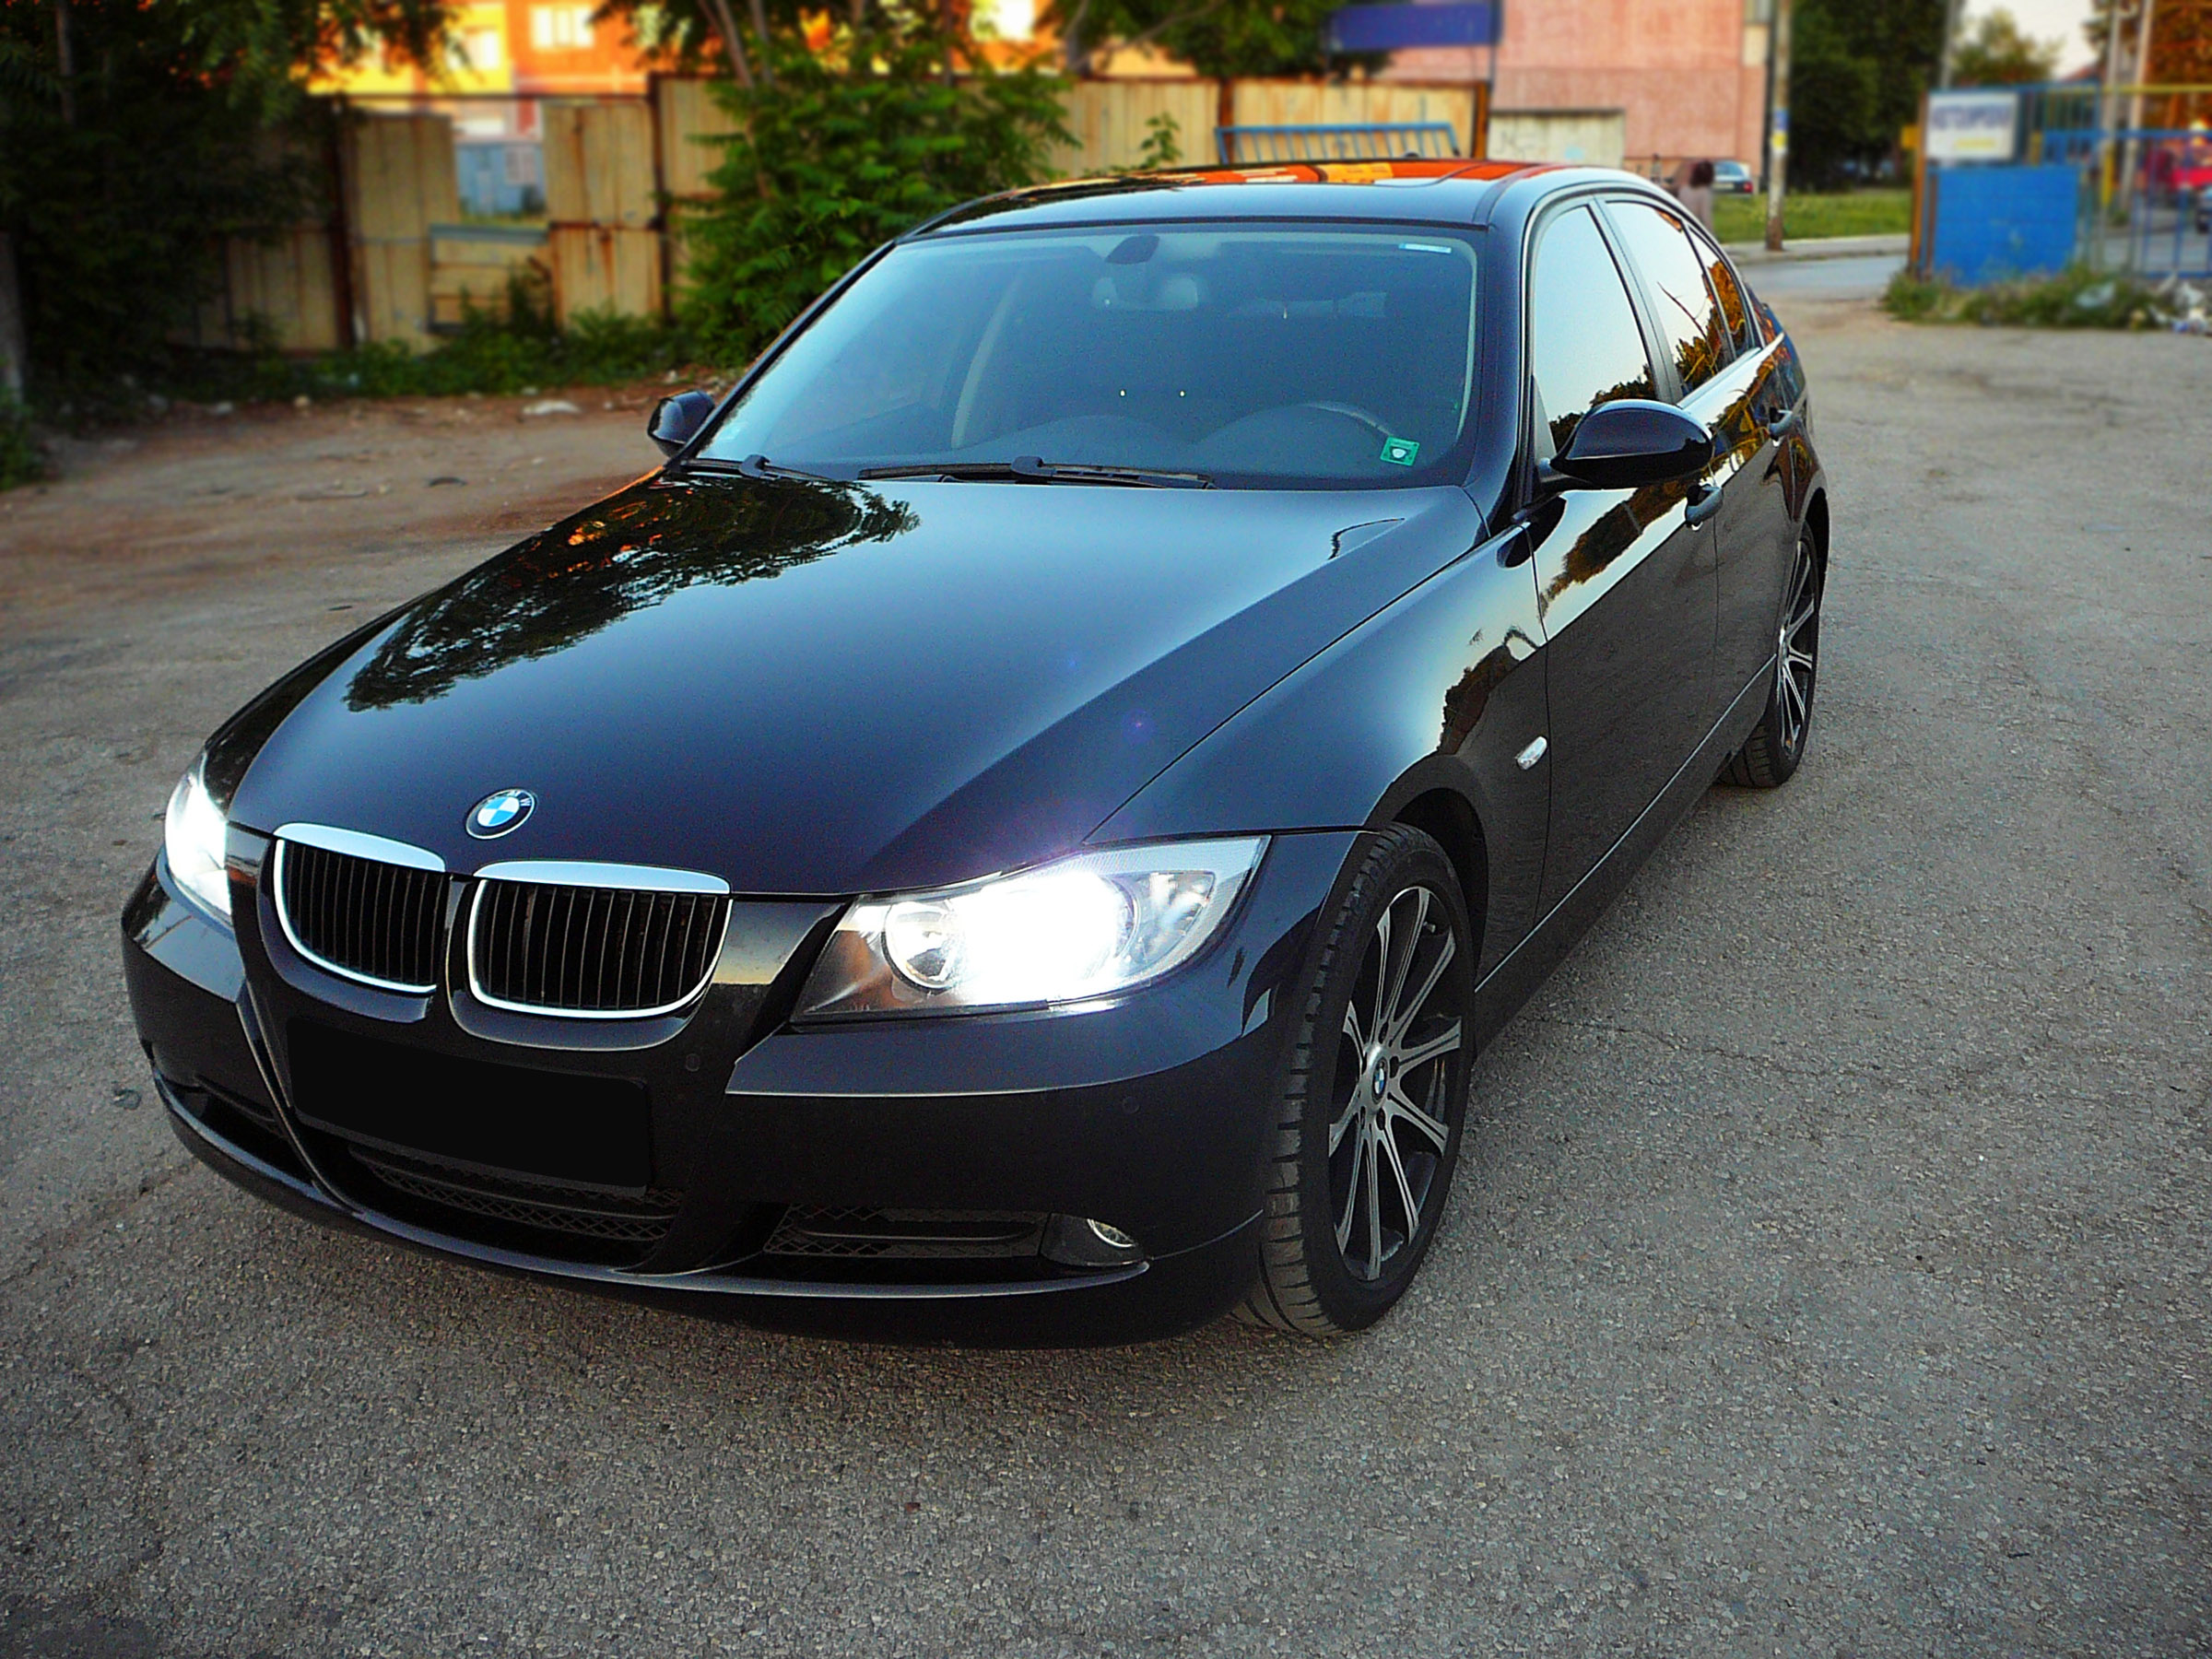 BMW E90 320d Picture 21990